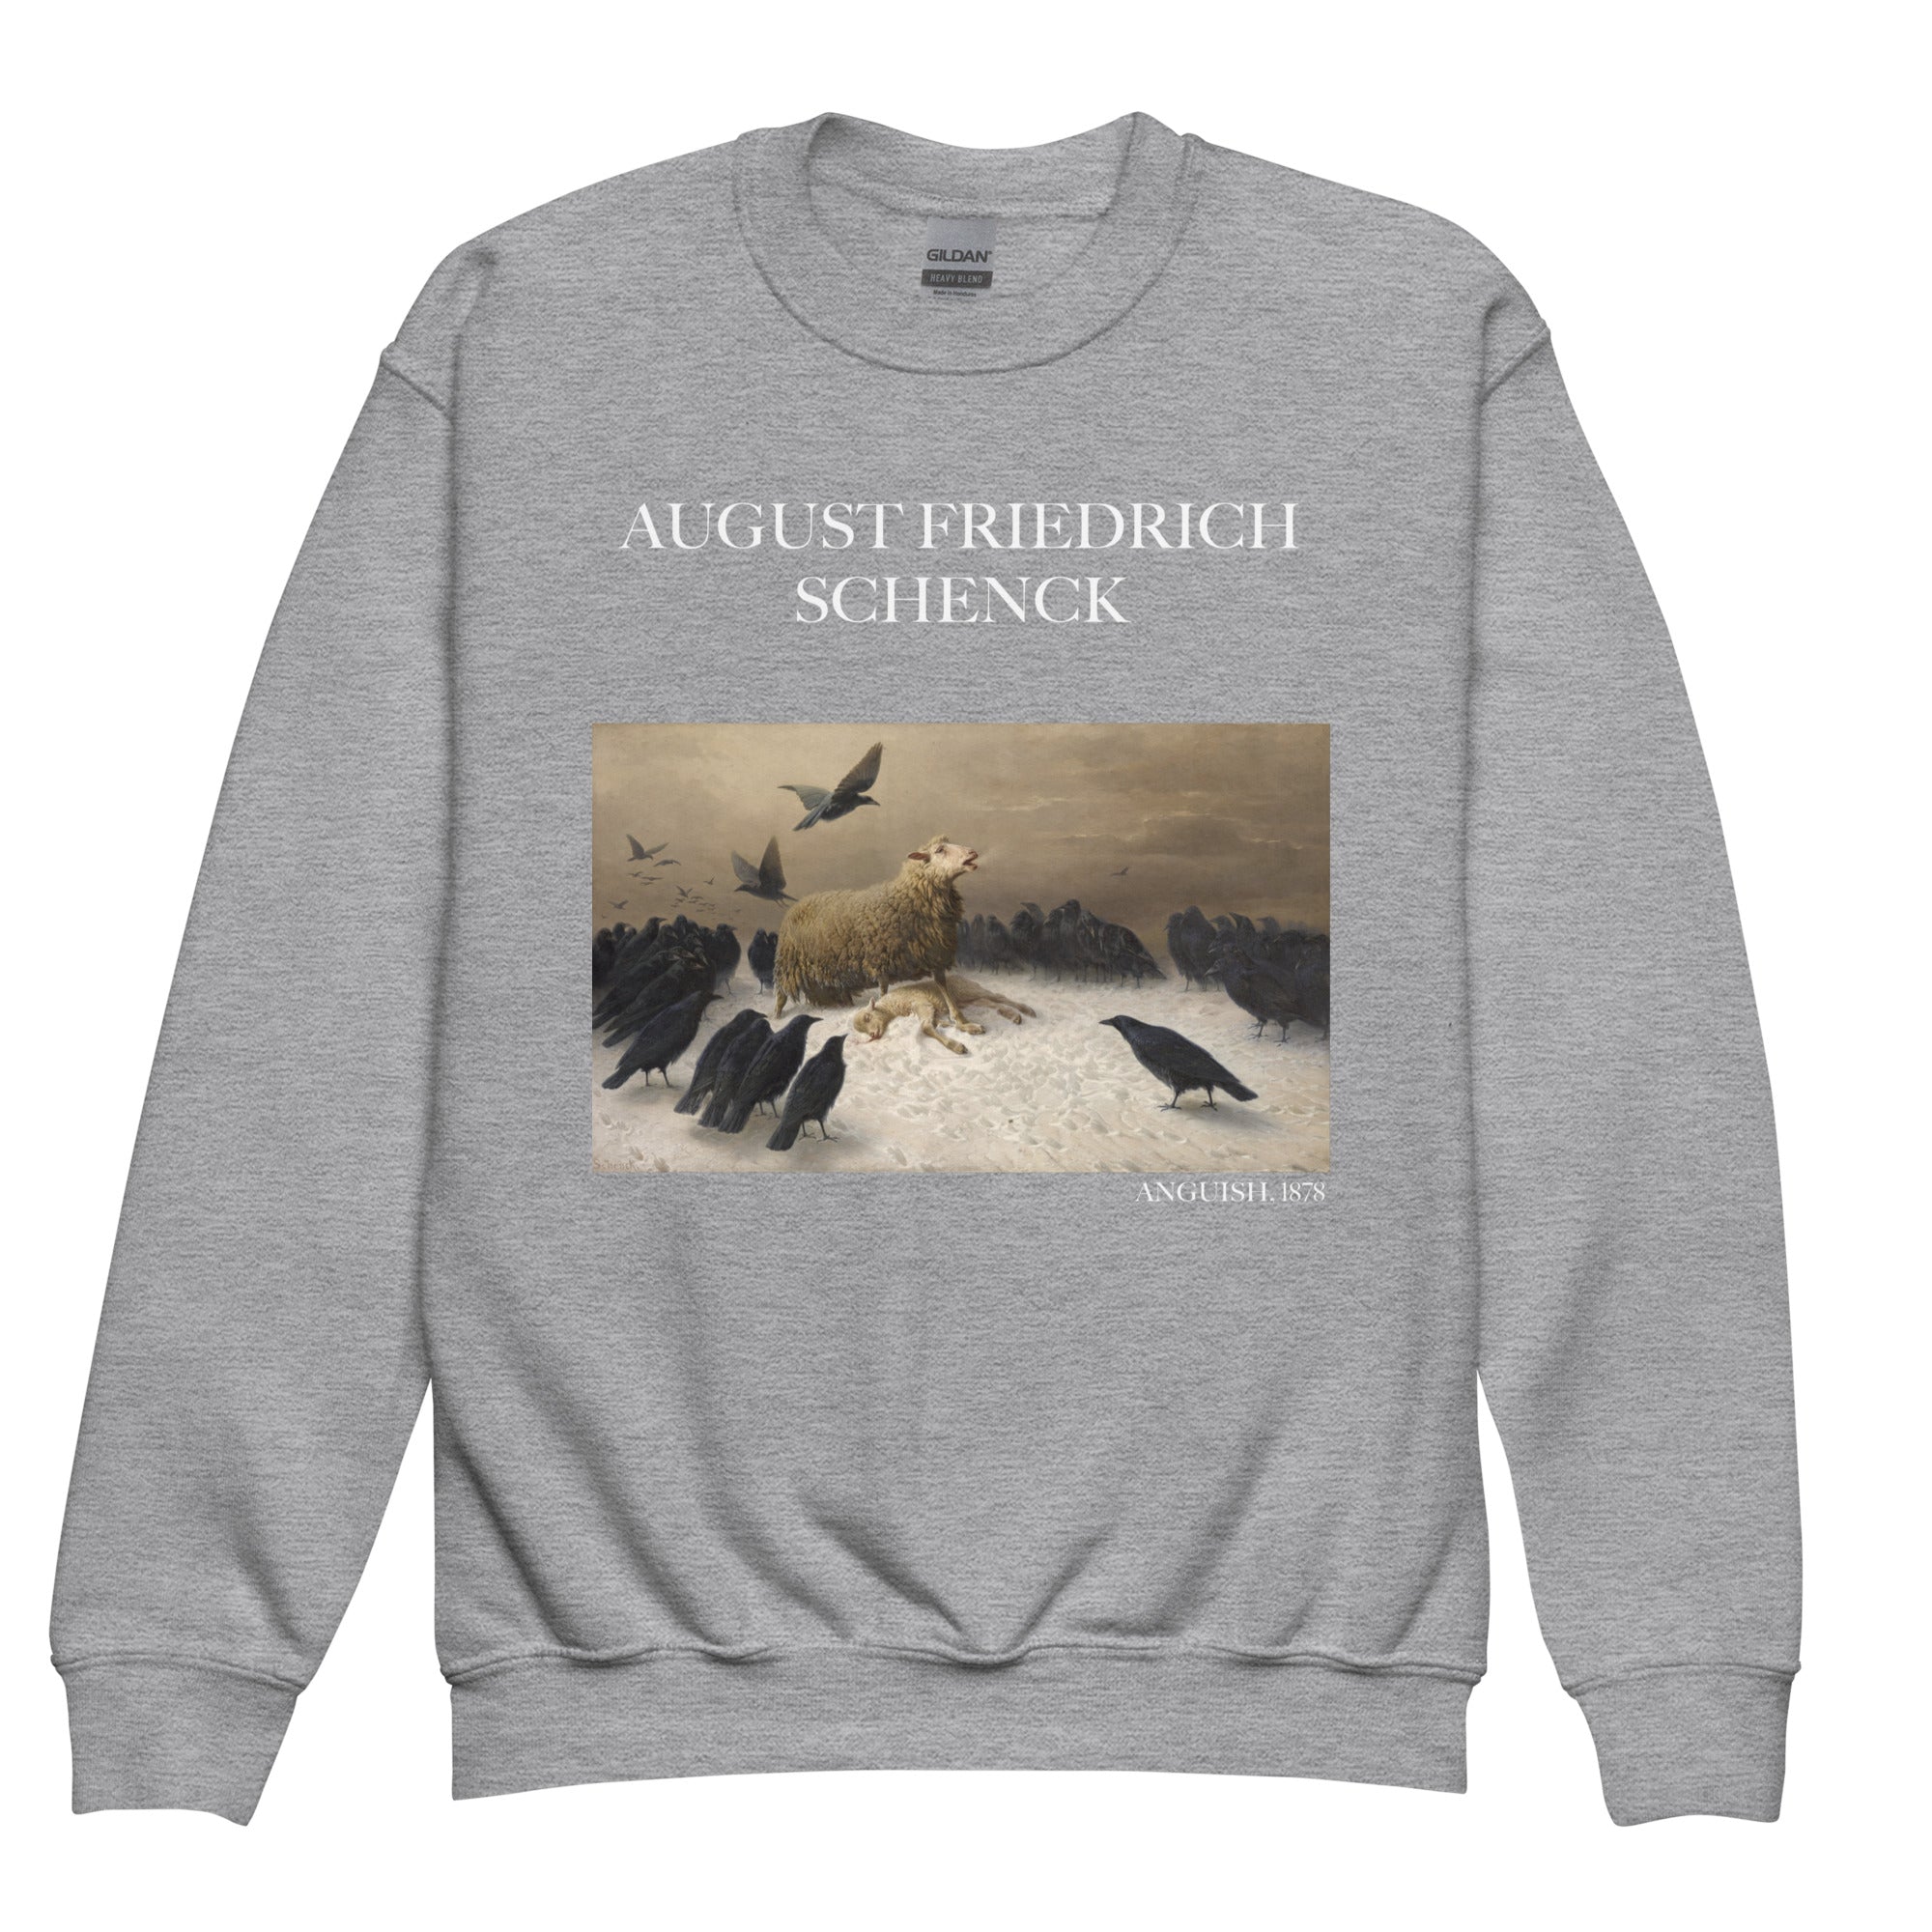 August Friedrich Schenck 'Angst' Berühmtes Gemälde Rundhals-Sweatshirt | Premium Jugend-Kunst-Sweatshirt